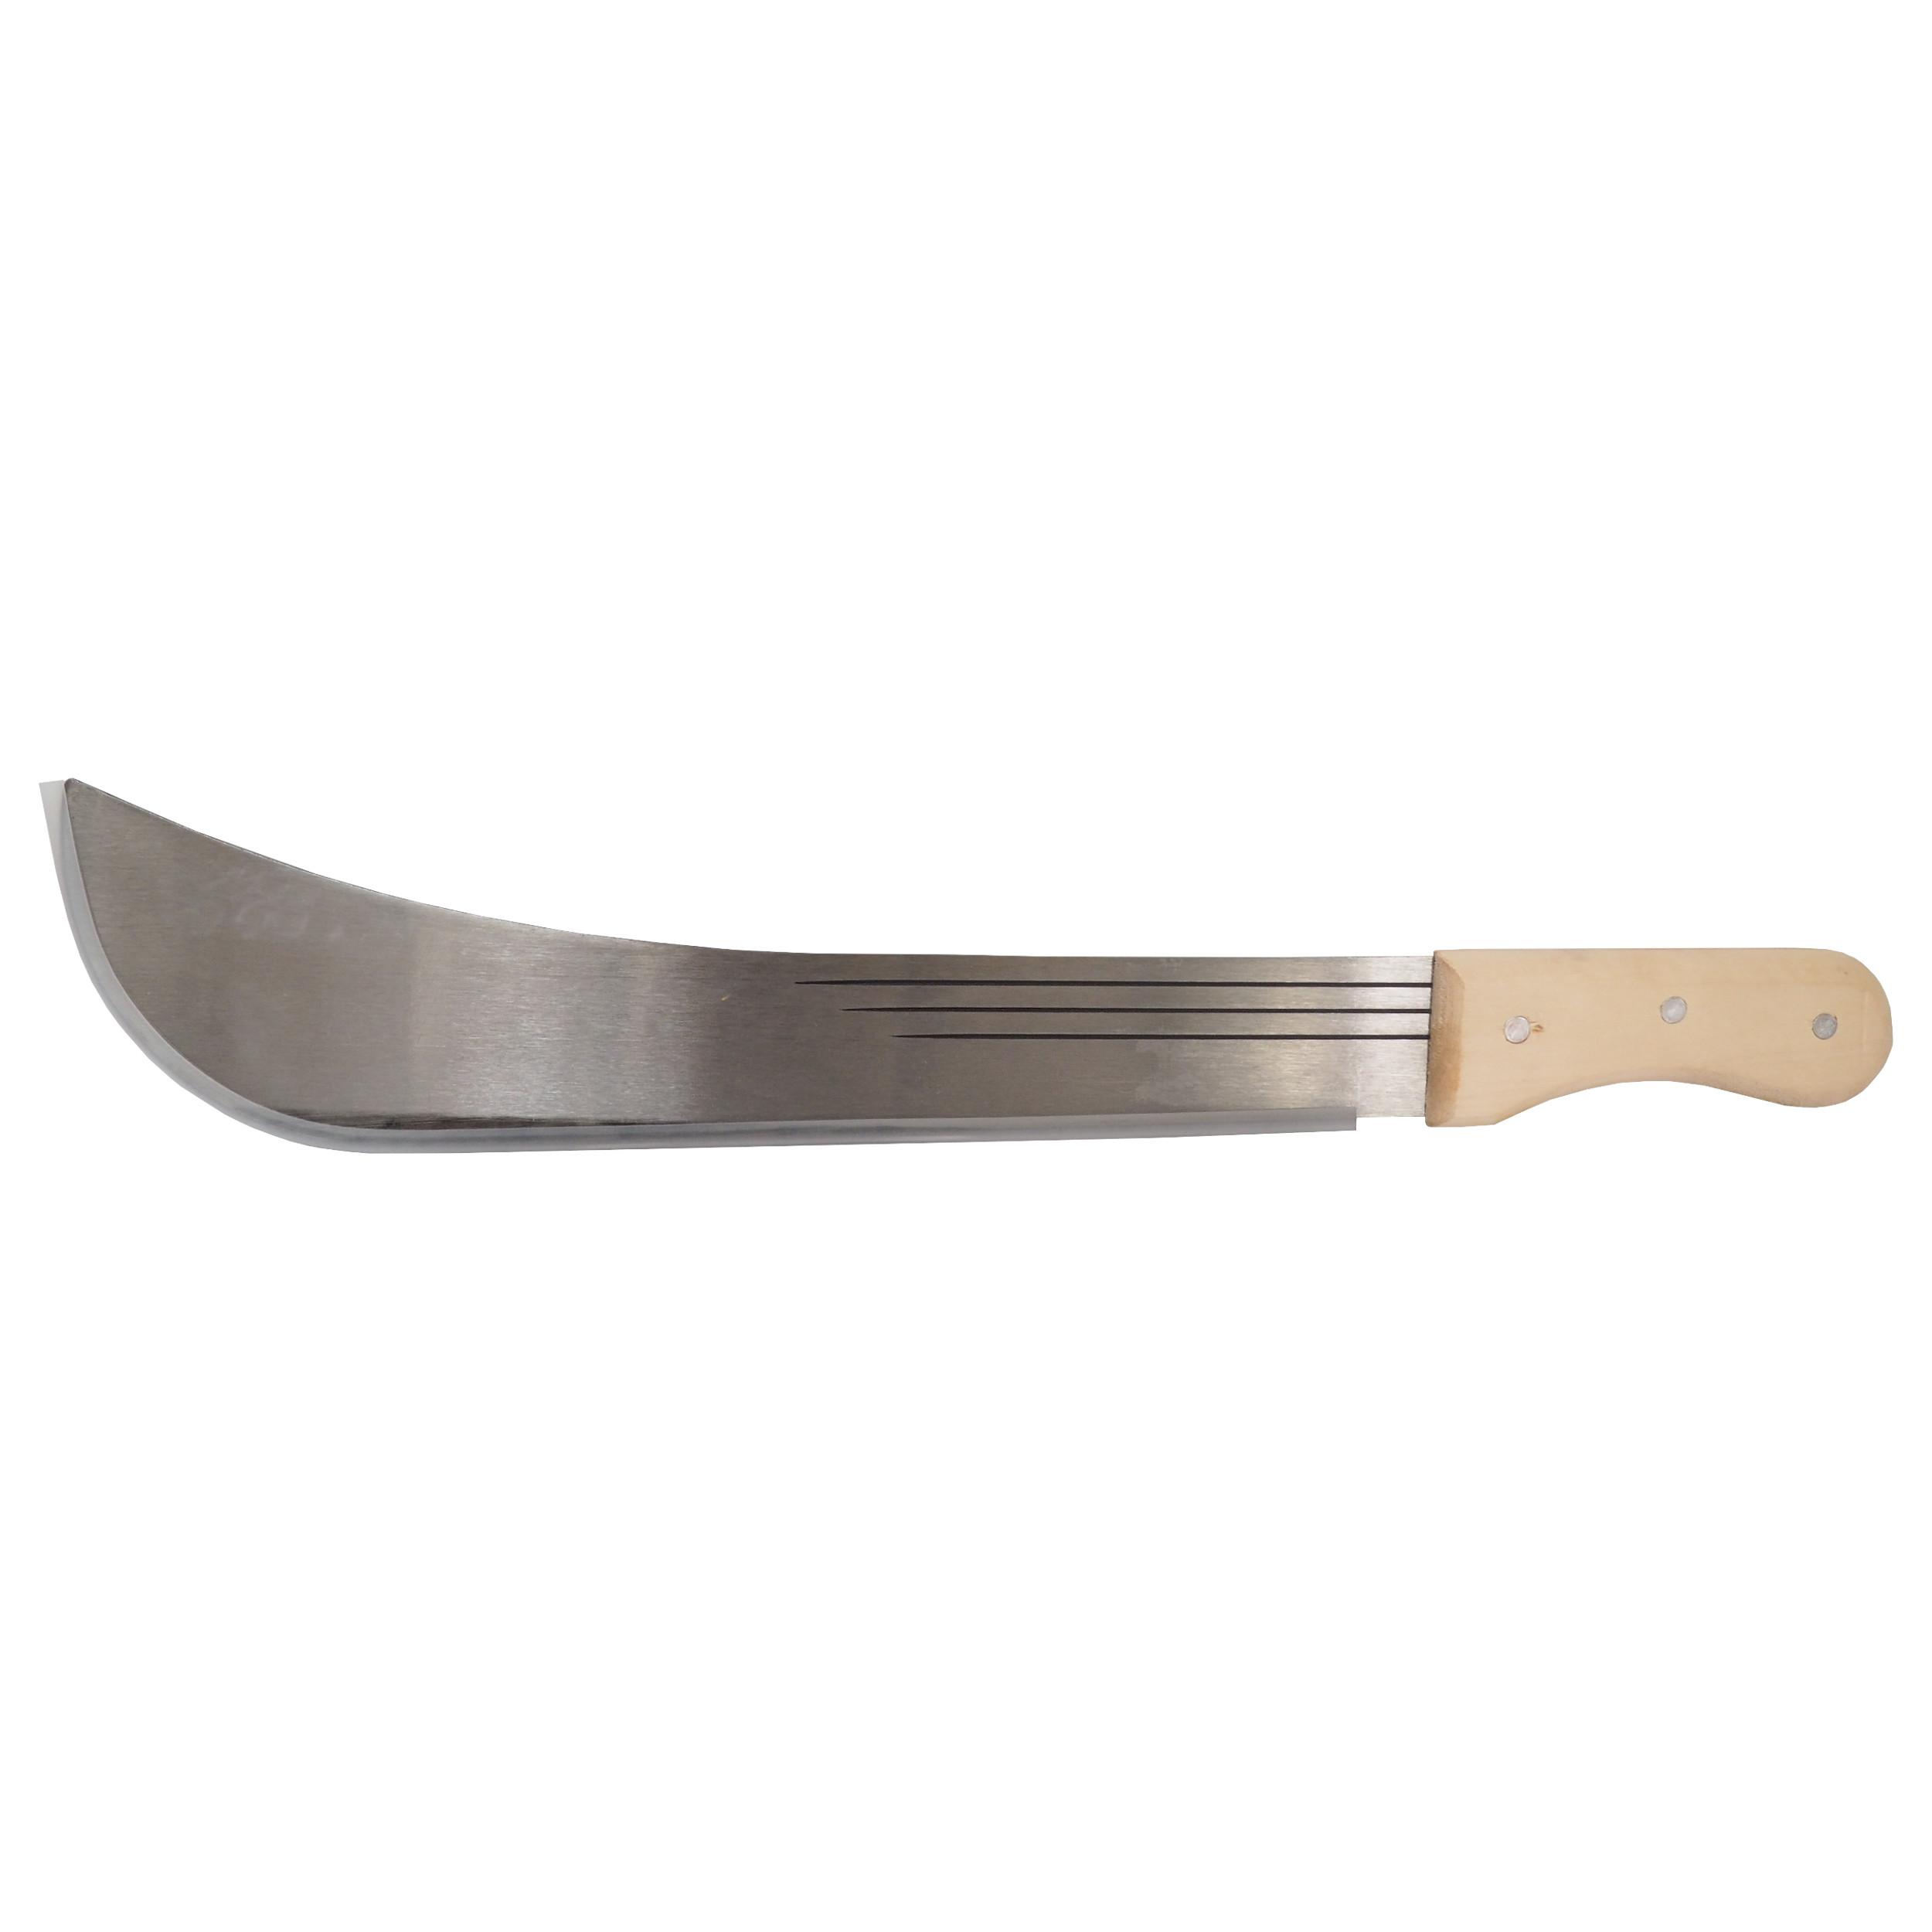 TOPTRADE mačeta ocelová, s dřevěnou rukojetí, 20“ čepel, 700 mm 0.62 Kg TOP Sklad4 309174 389